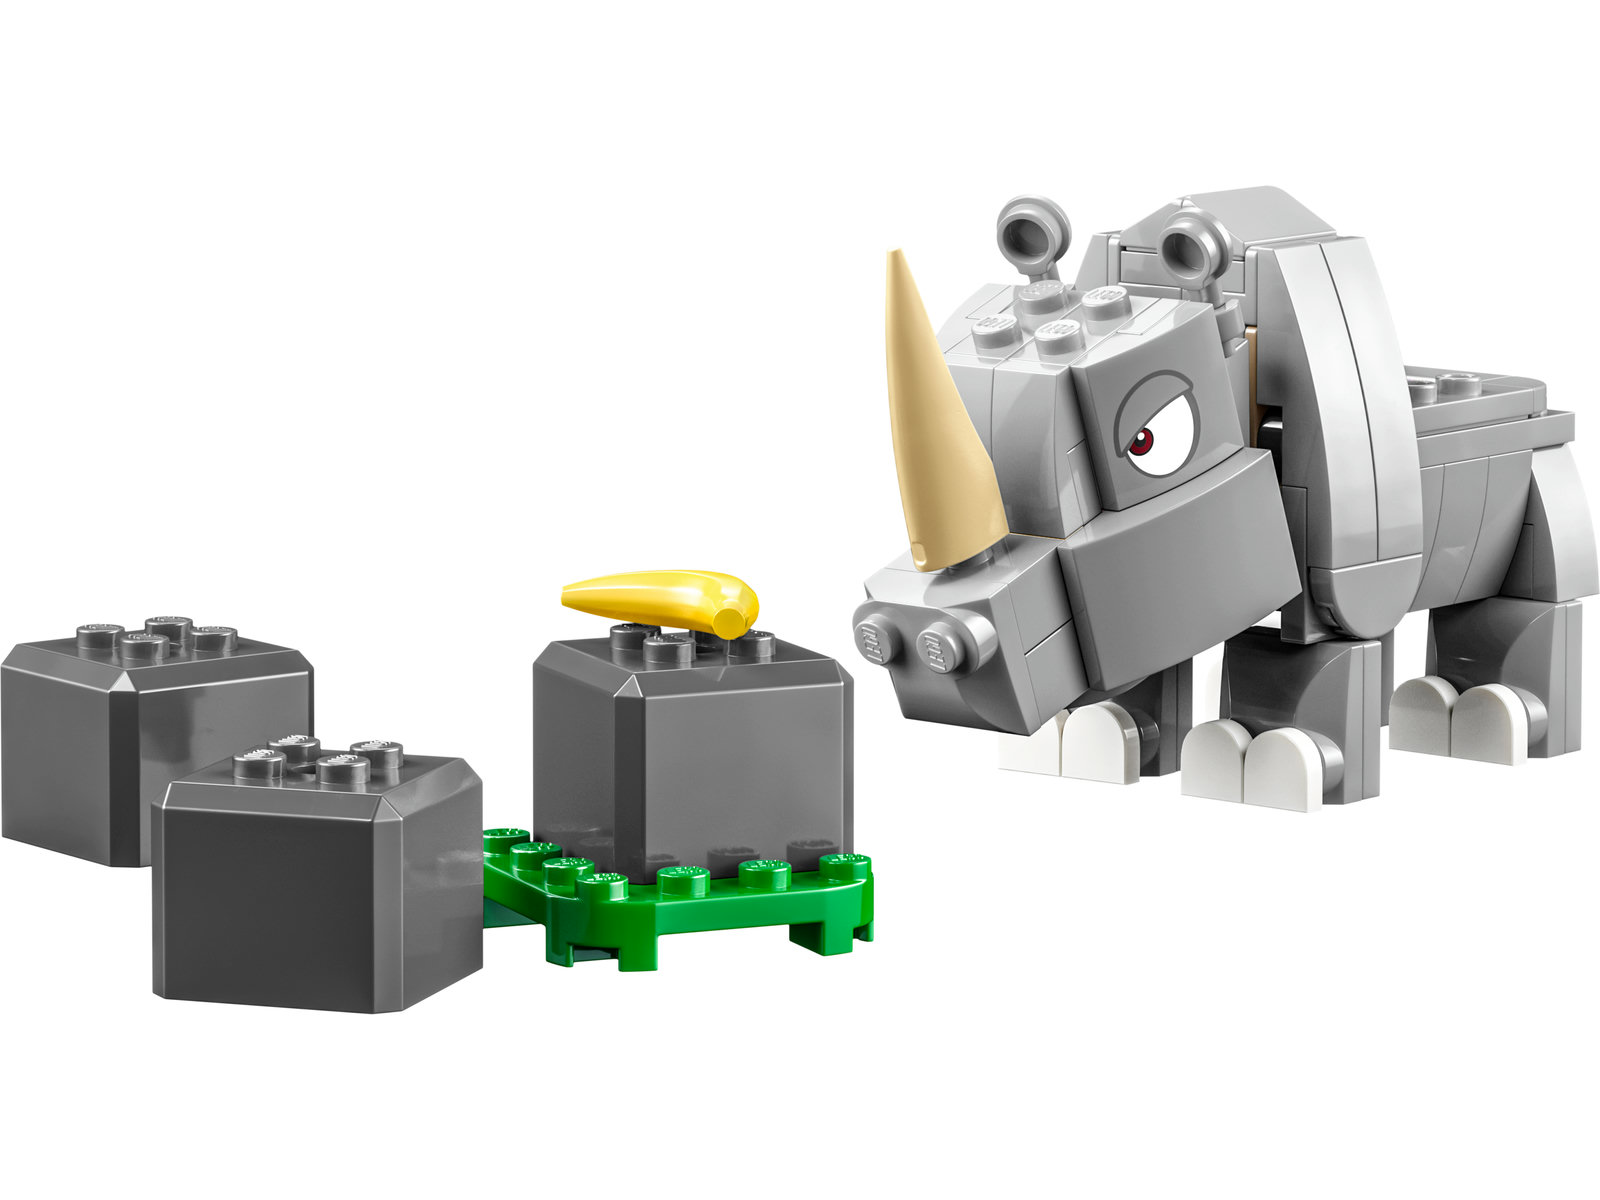 LEGO® Super Mario 71420 - Rambi das Rhino – Erweiterungsset